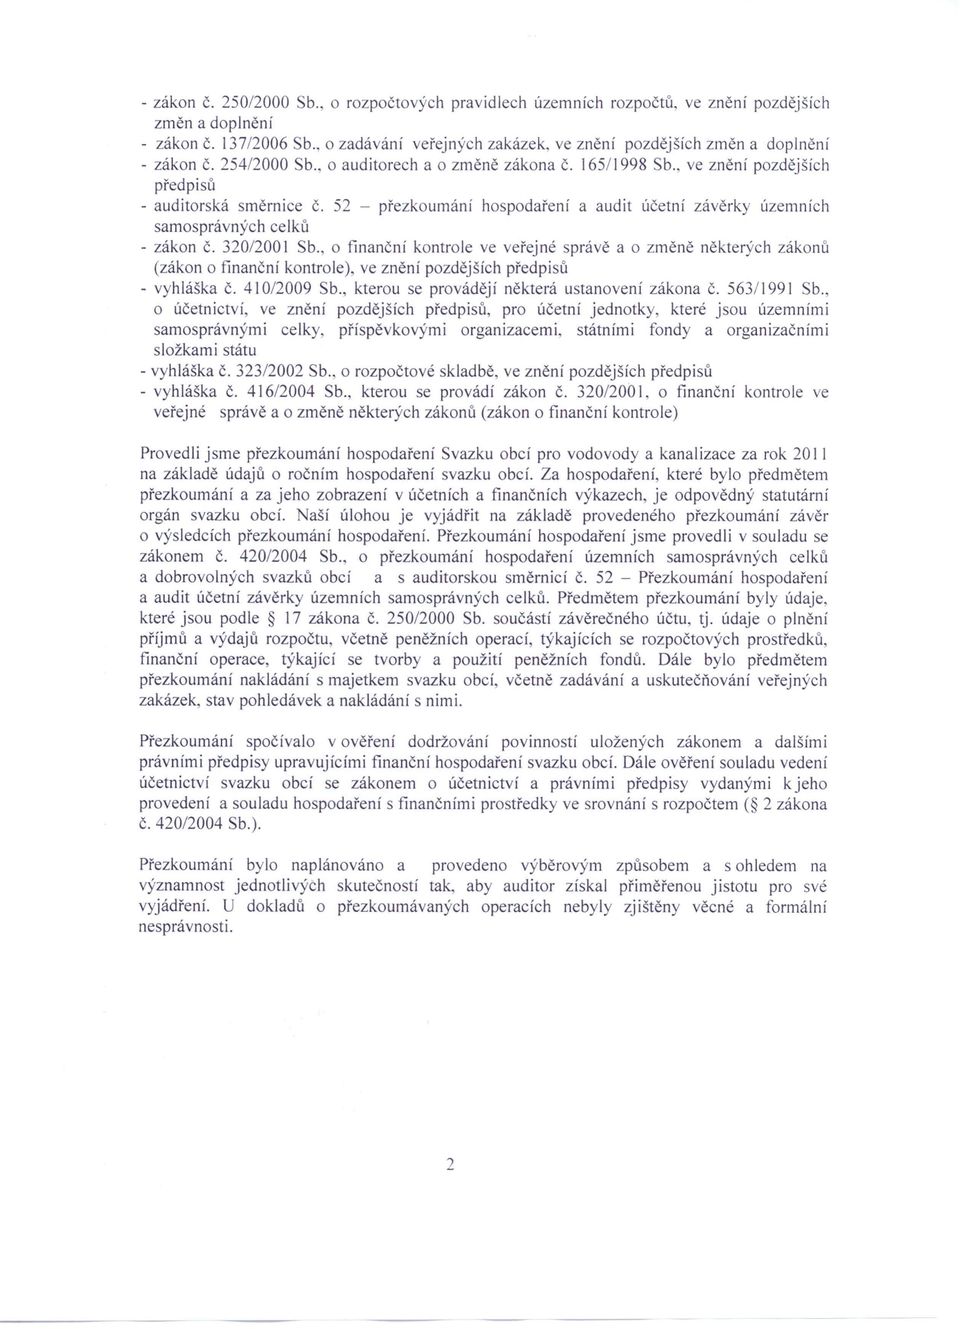 52 - přezkoumání hospodaření a audit účetní závěrky územních samosprávných celků - zákon Č. 320/200 I Sb.